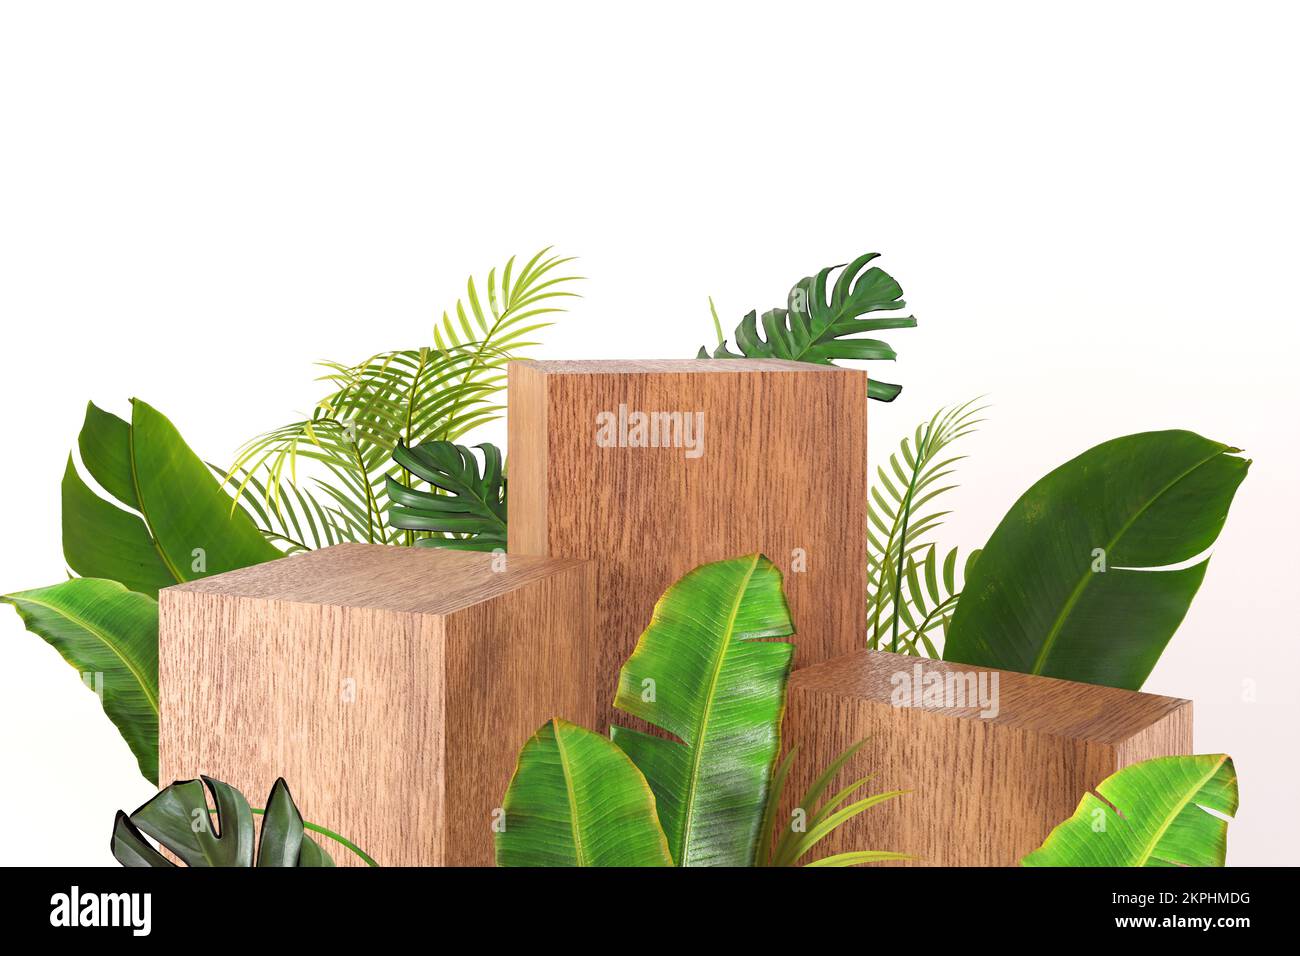 Luxuriöse Holzkiste, Bausteine, quadratischer Podiumwürfel, grüne tropische Blätter auf weißem Hintergrund. Modell für Produkt, Parfüm, Sonderangebot Stockfoto